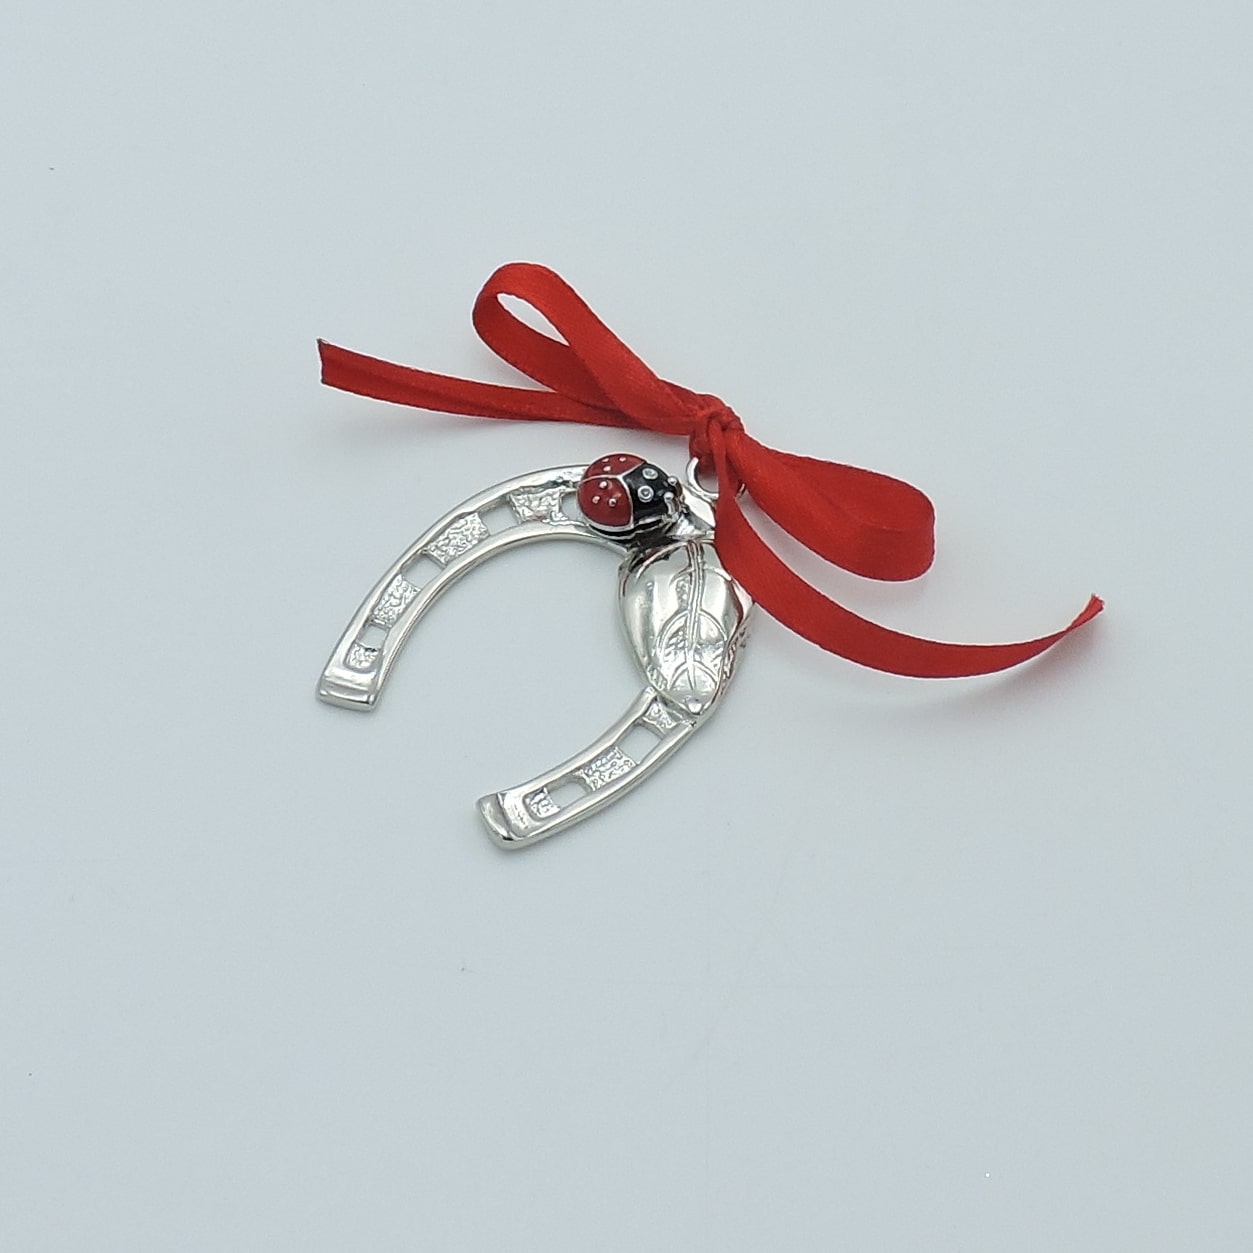 Ferro di cavallo: il gioiello perfetto come regalo portafortuna – Vivyinrosa